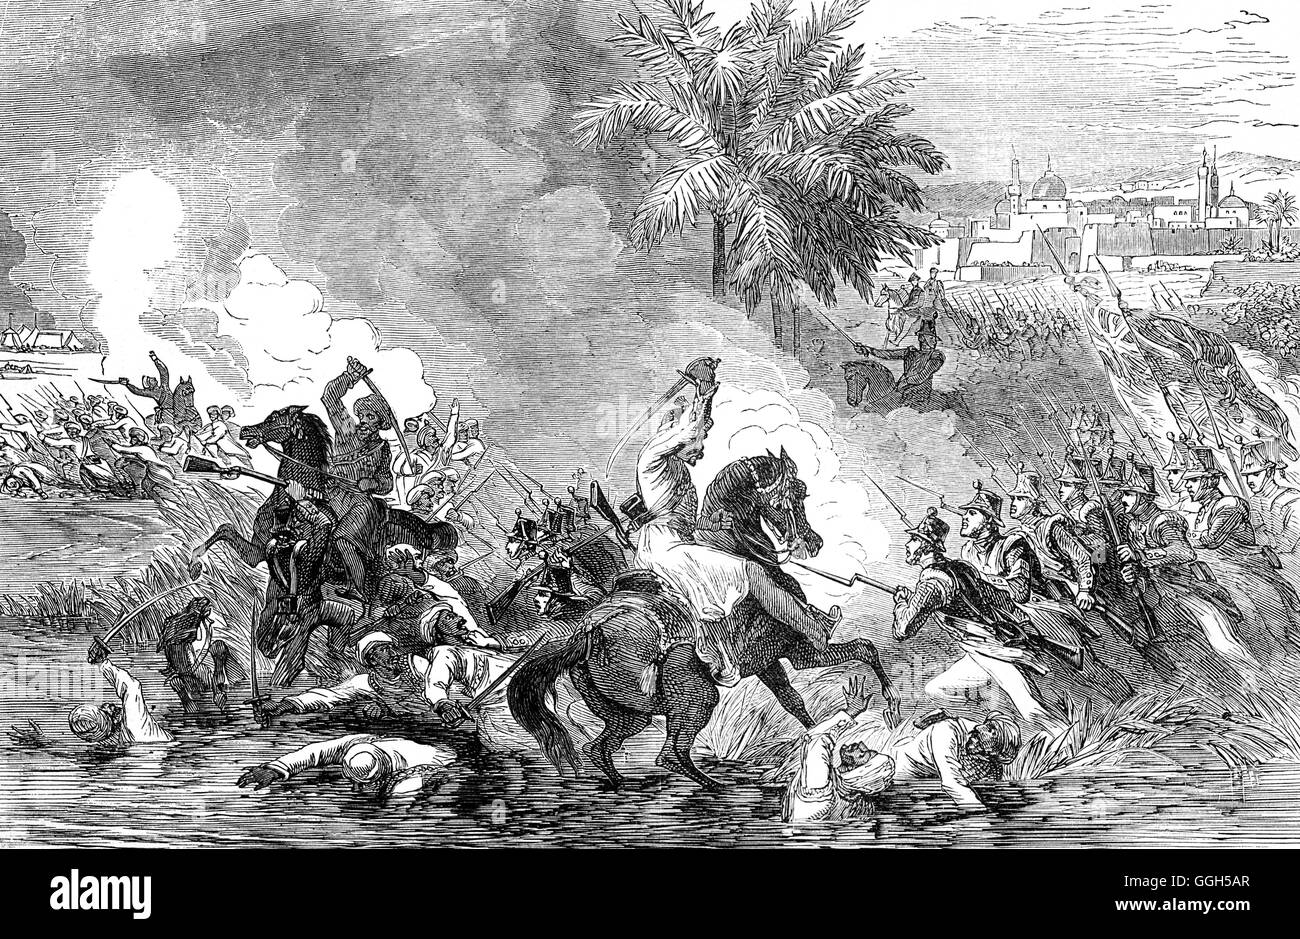 Britische Truppen drangen Jalalabad im Jahre 1838, während des ersten Anglo-Afghanischen Krieg. In 1842 Schlacht von Jellalabad belagert Akbar Khan die britischen Truppen auf dem Weg nach Jalalabad. Stockfoto